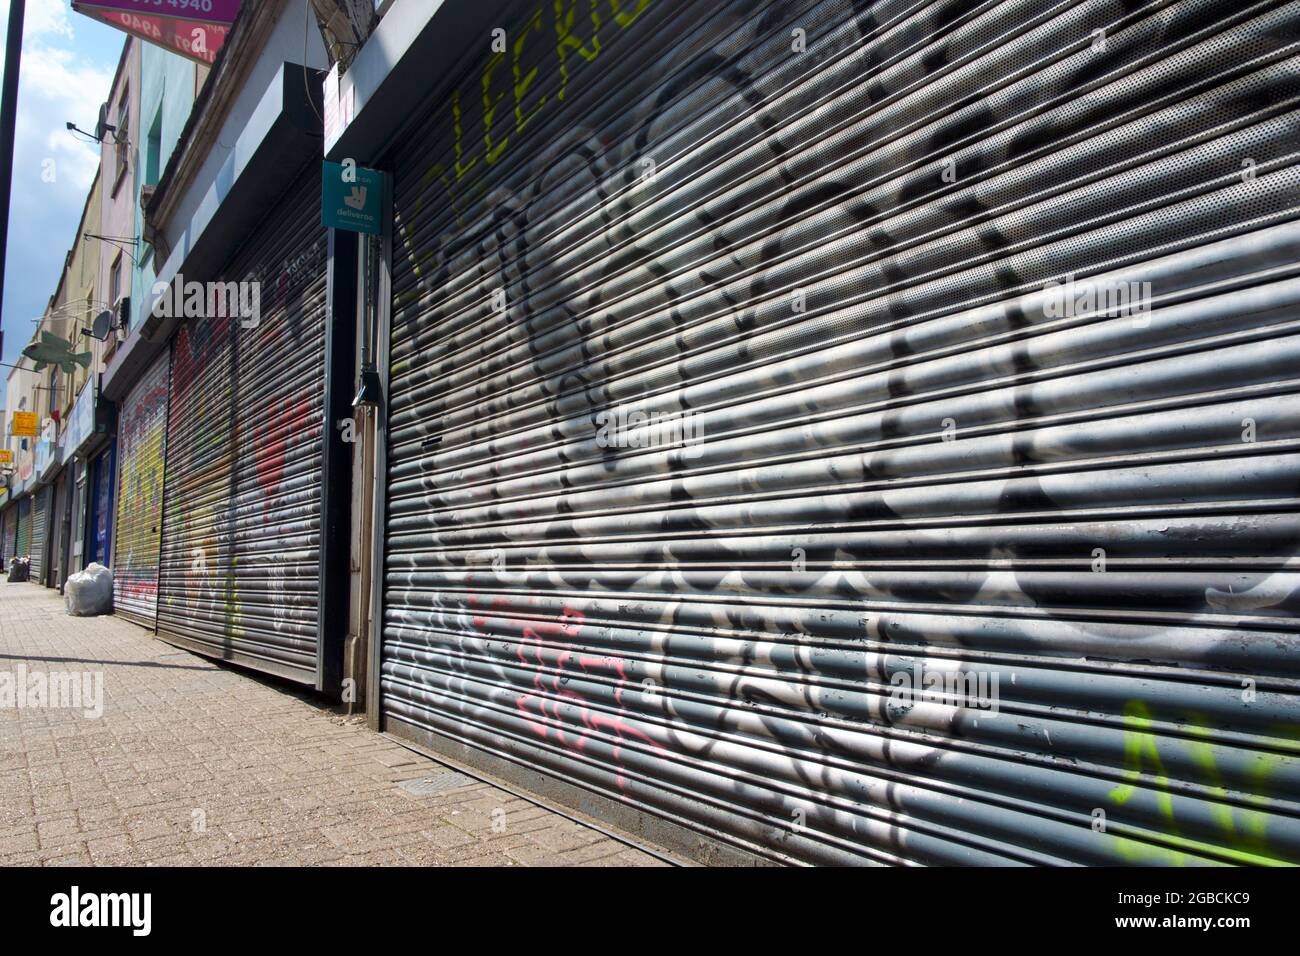 Tiendas cerradas en una calle alta, Reino Unido Foto de stock